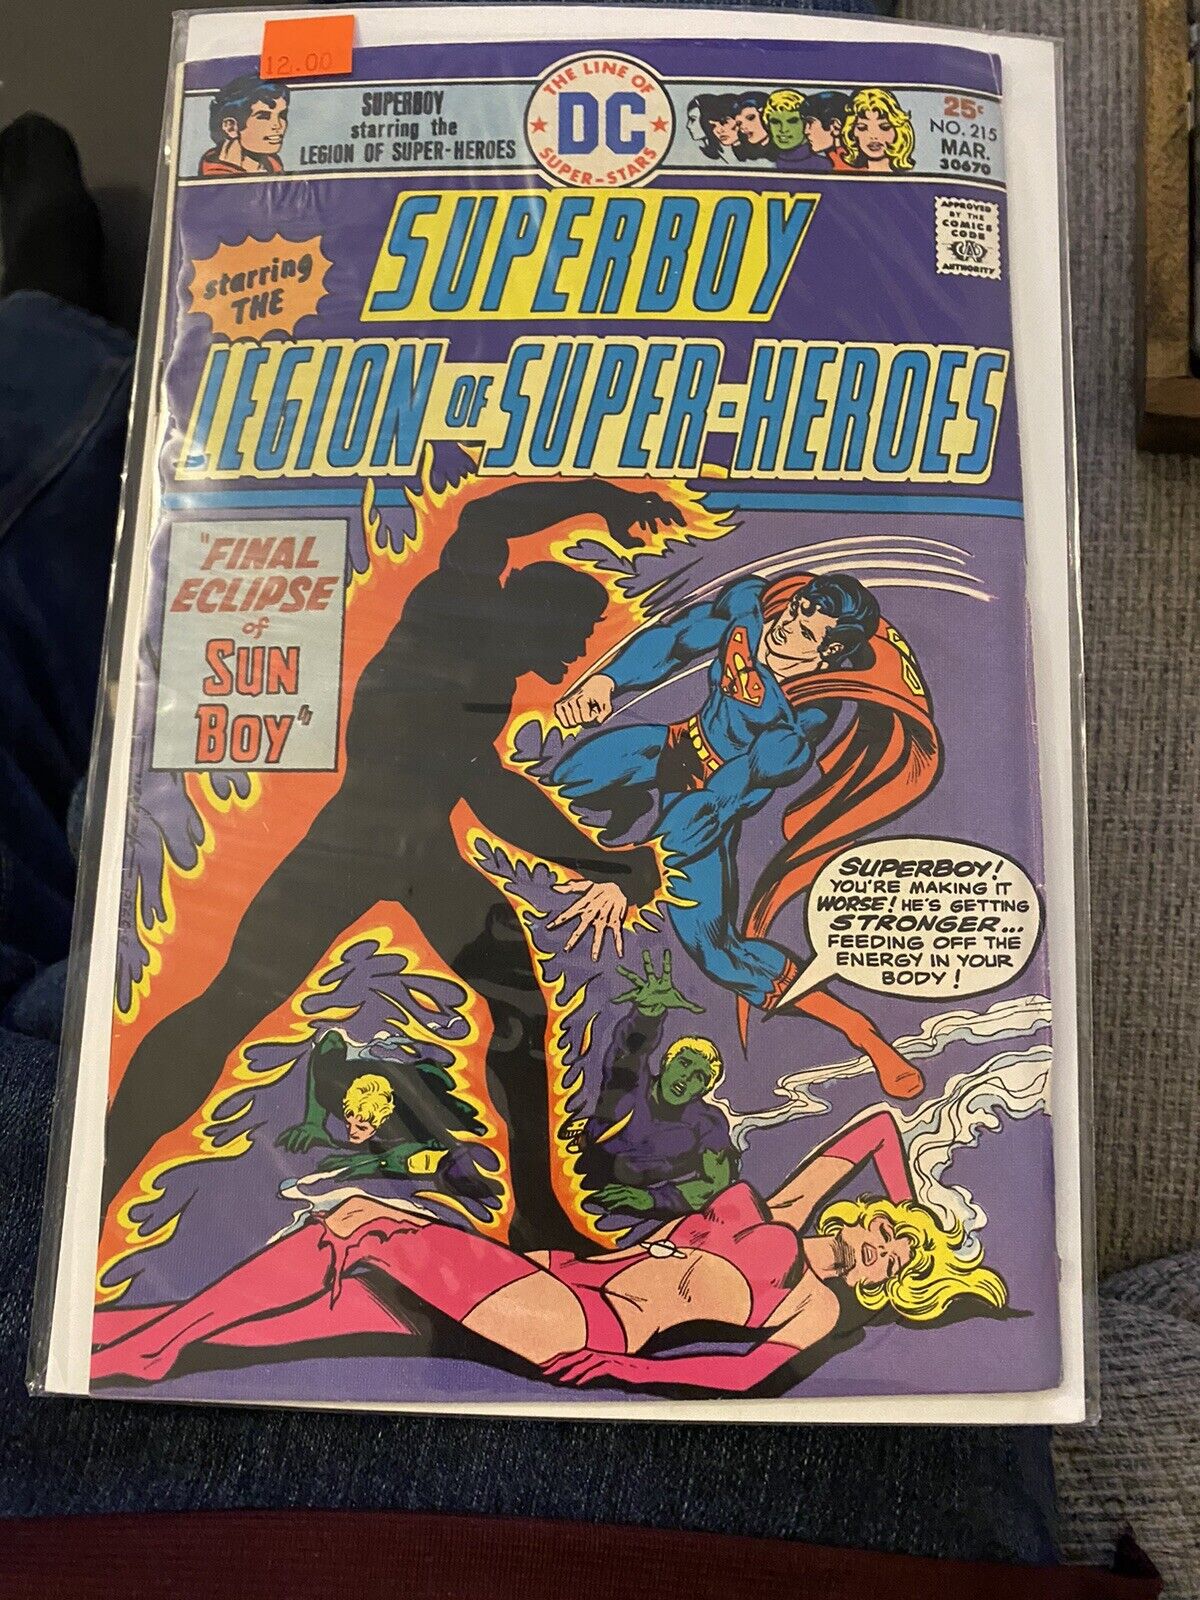 SUPERBOY #215 LEGION OF SUPER-HEROES,Sun Boy DC Comics 1976